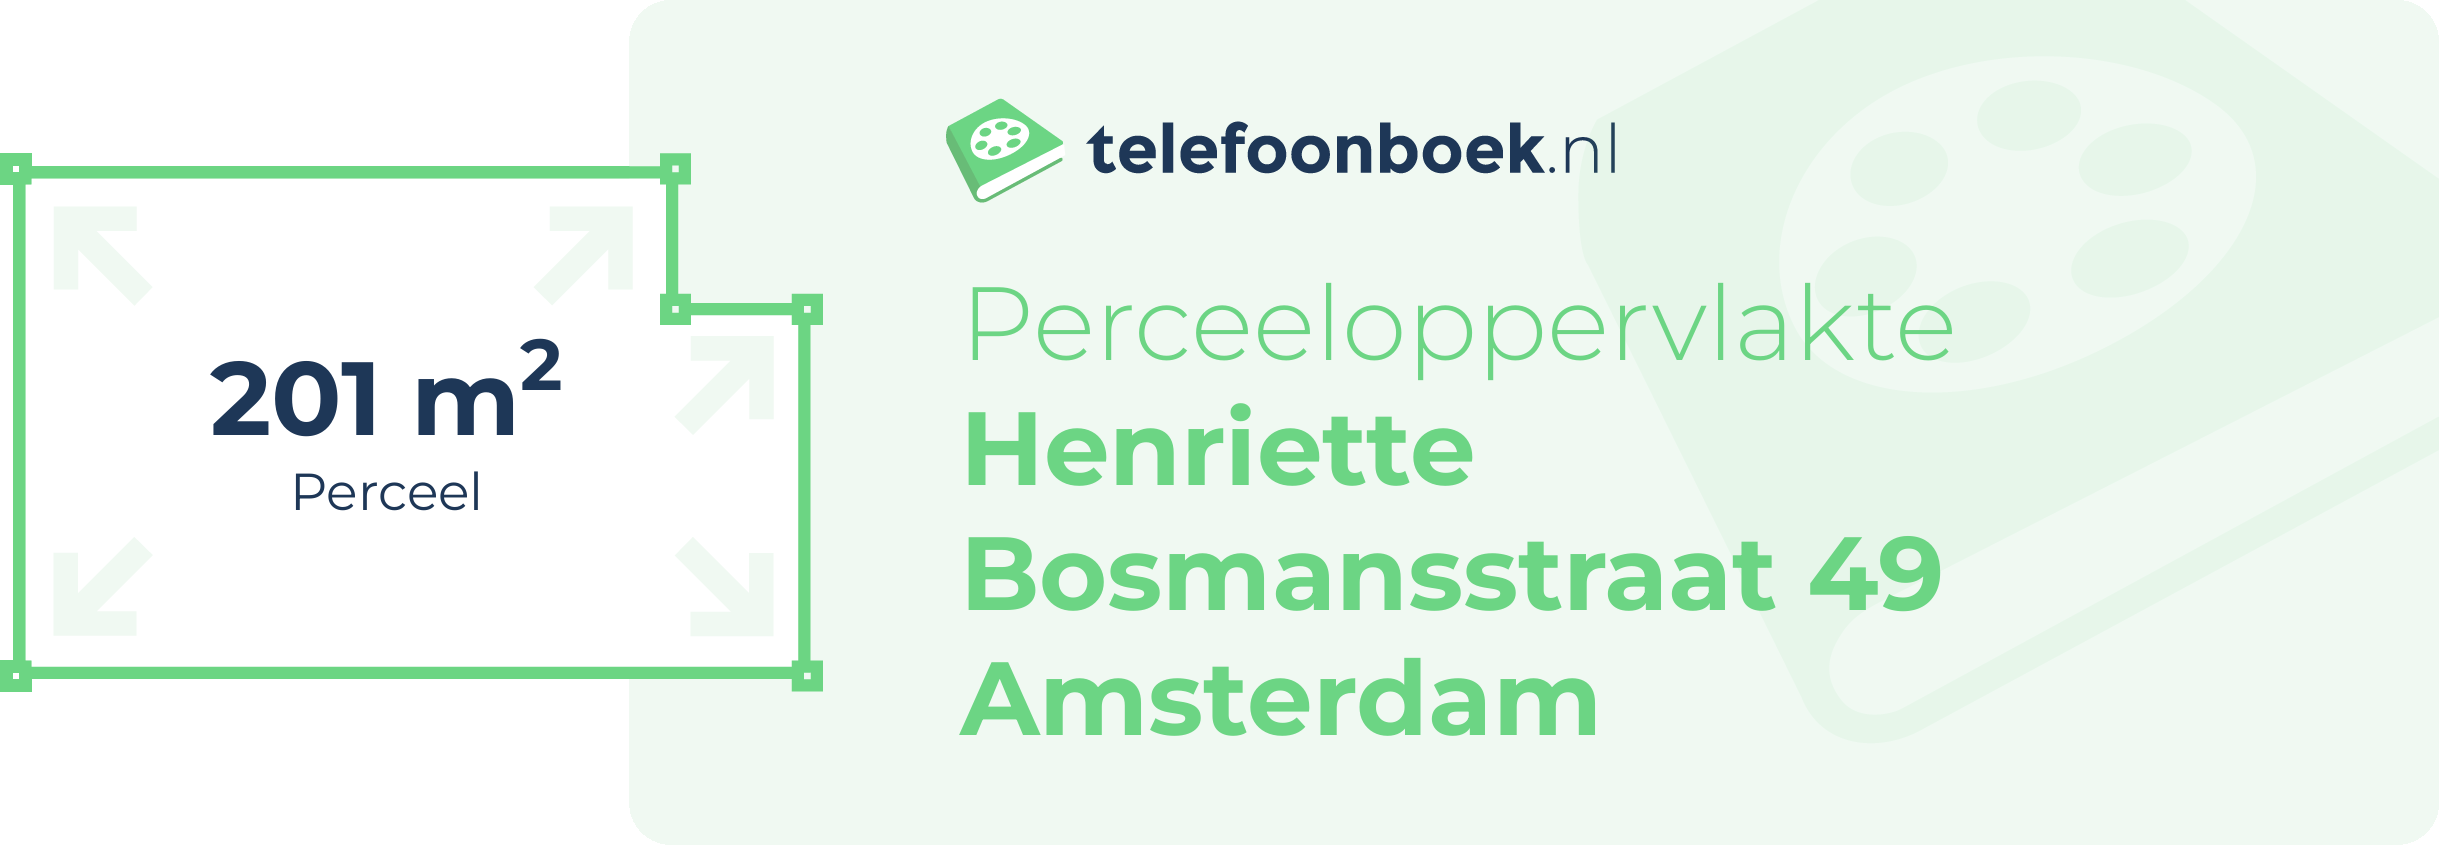 Perceeloppervlakte Henriette Bosmansstraat 49 Amsterdam